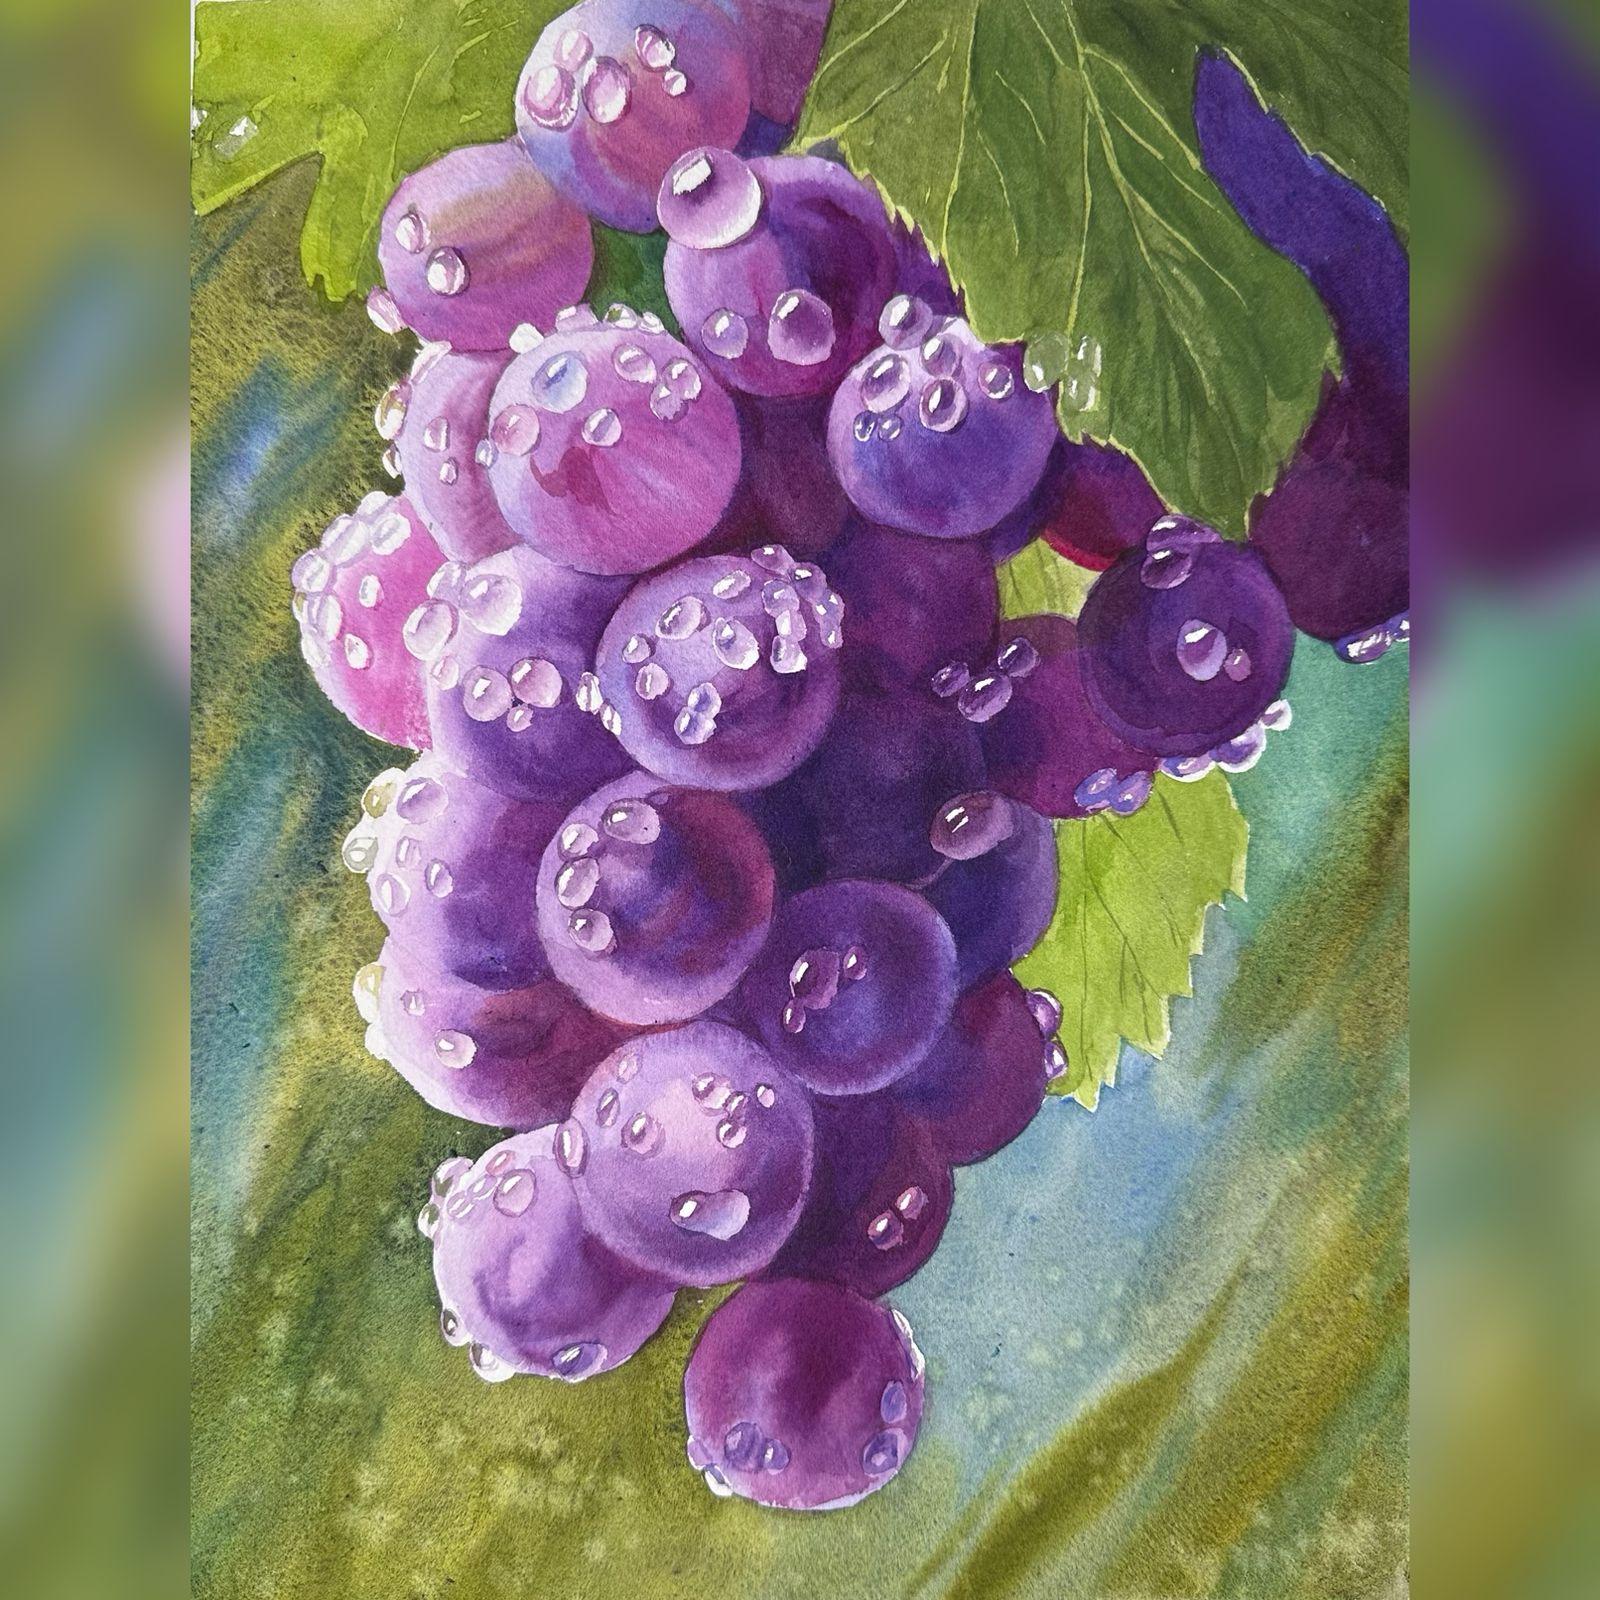 Las uvas con las gotas del roció (4 horas)